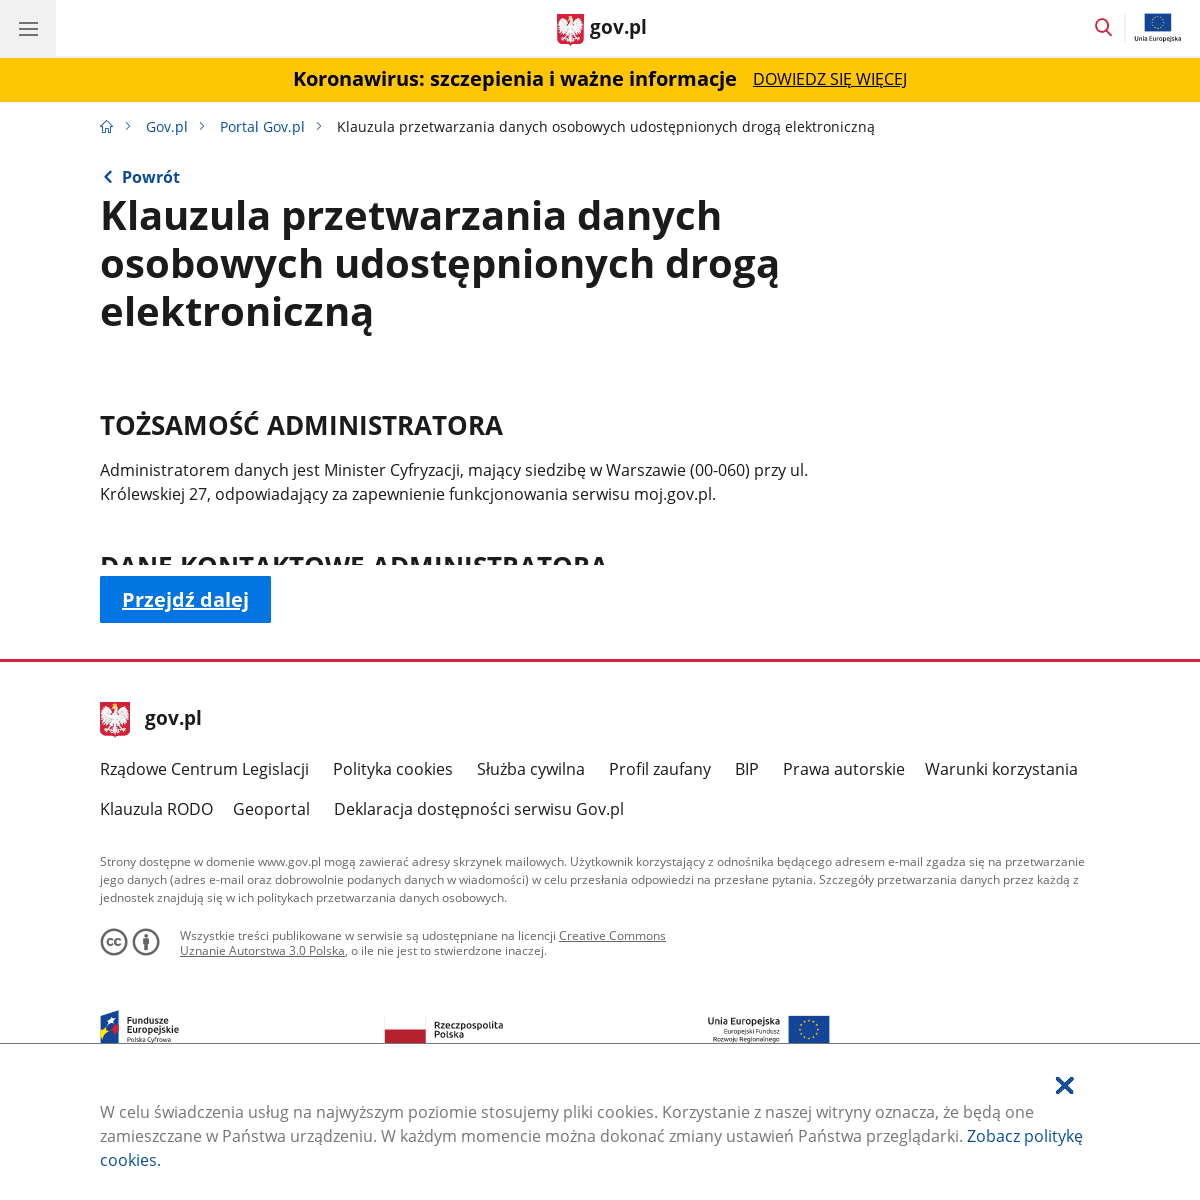 A complete backup of https://moj.gov.pl